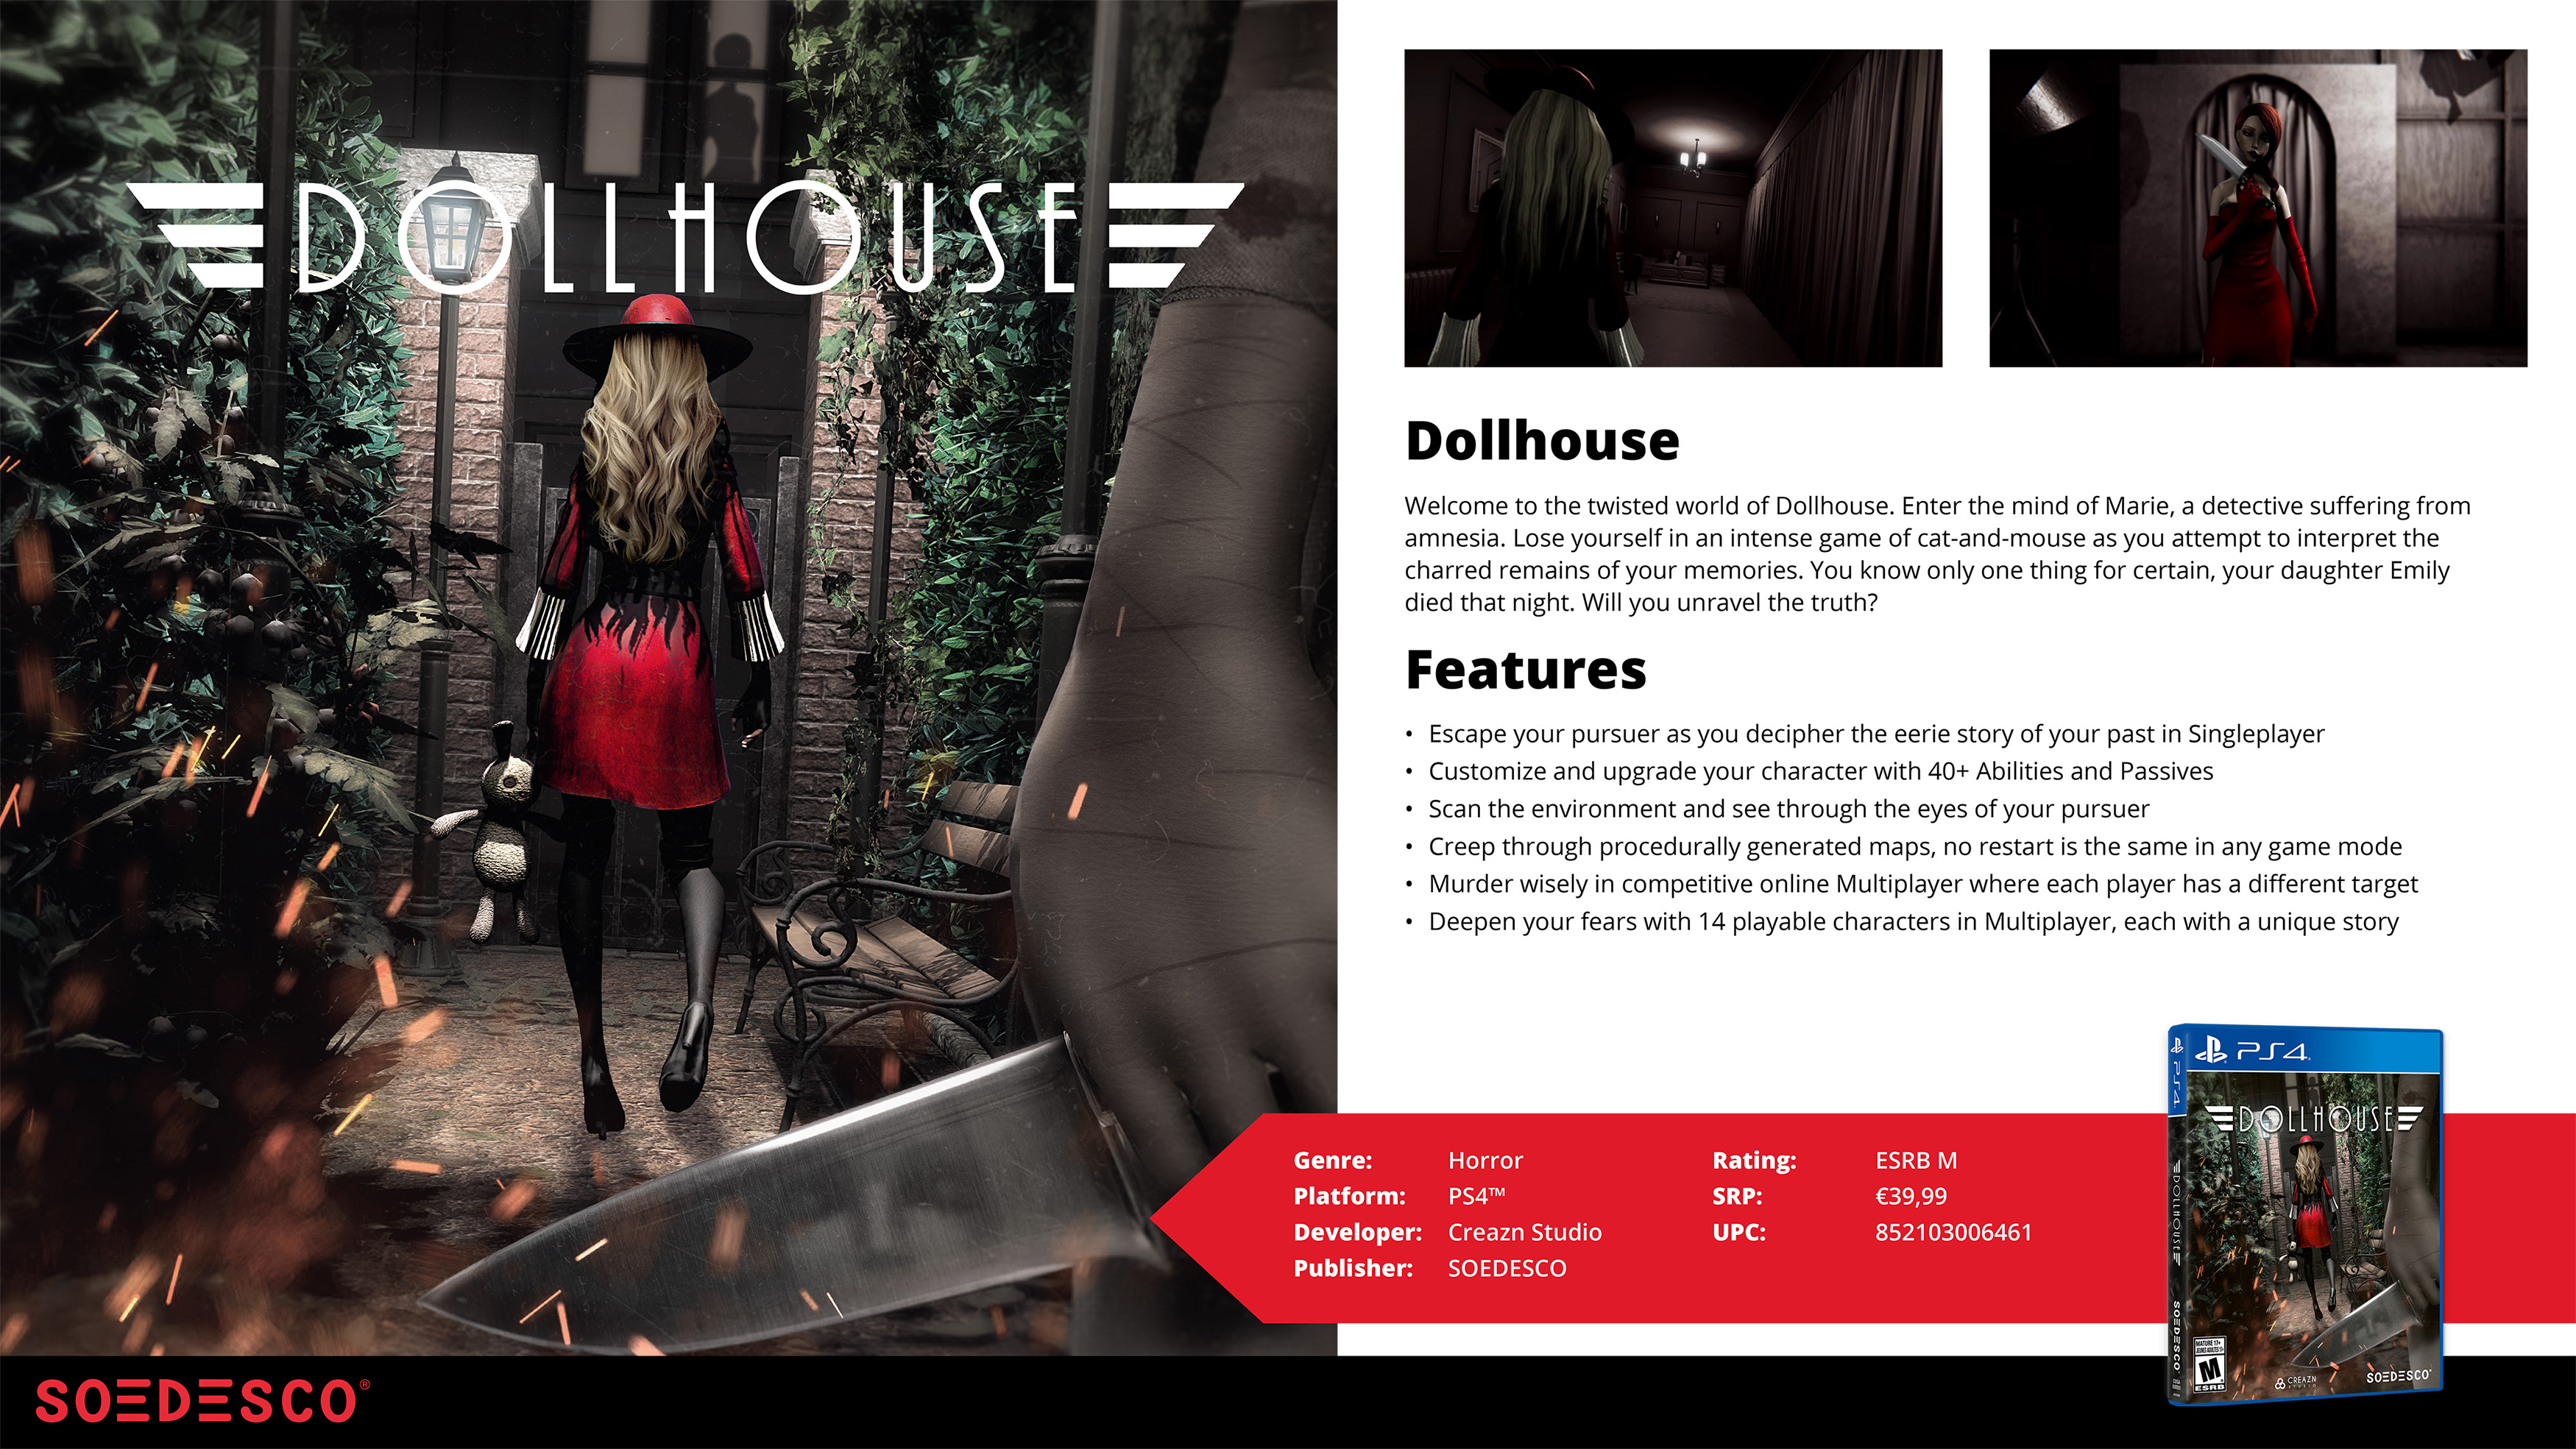 Dollhouse on Steam